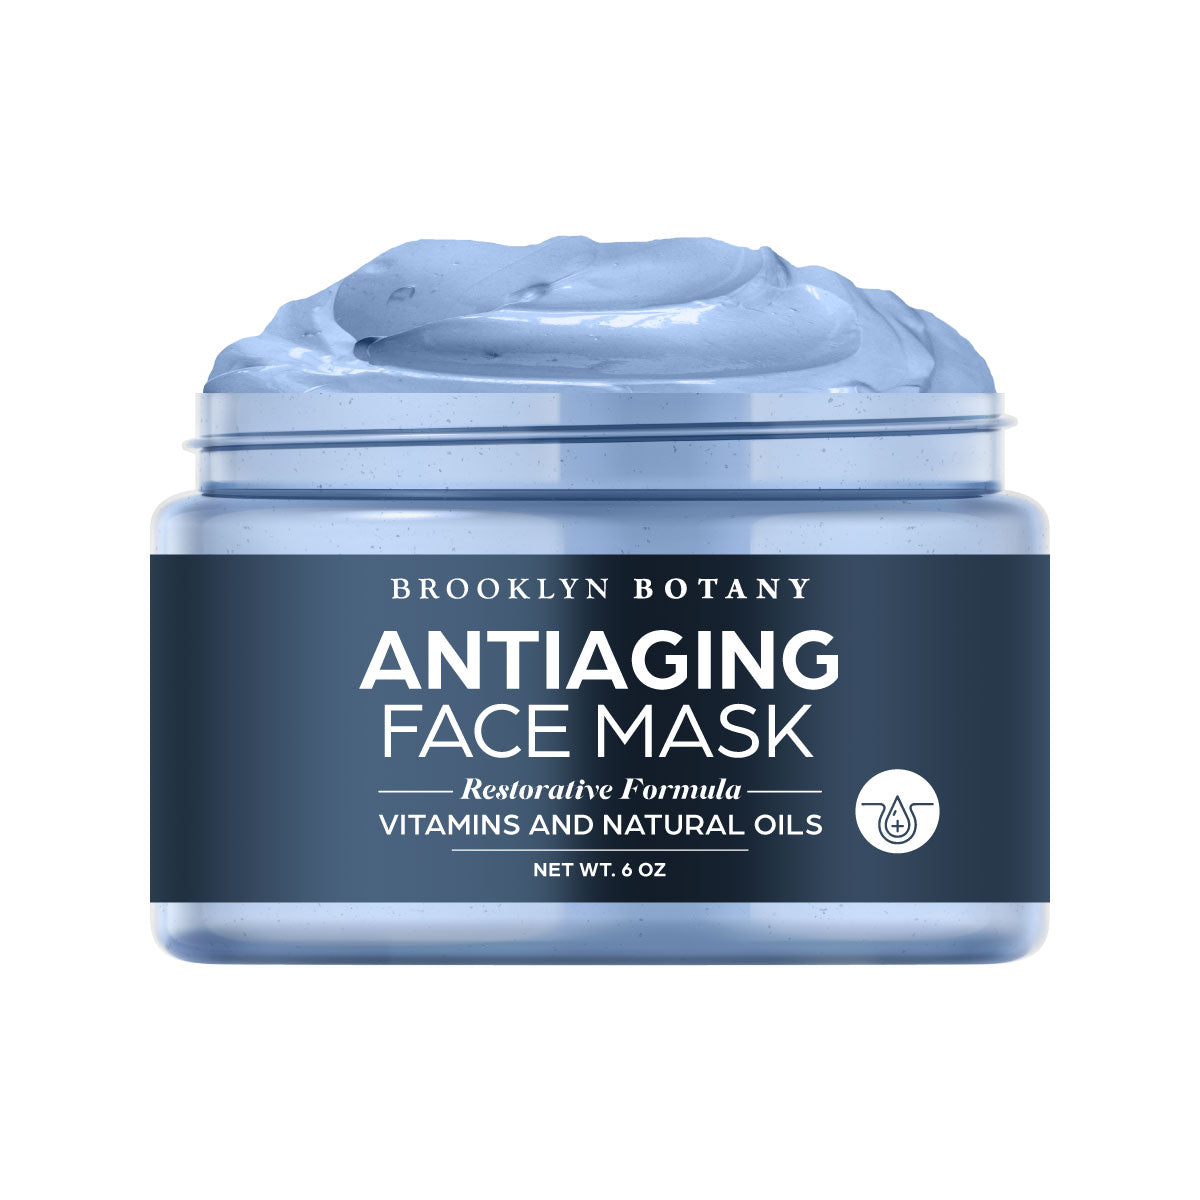 Følg os Praktisk Blændende Antiaging Face Mask 6 oz - BrooklynBotany.com